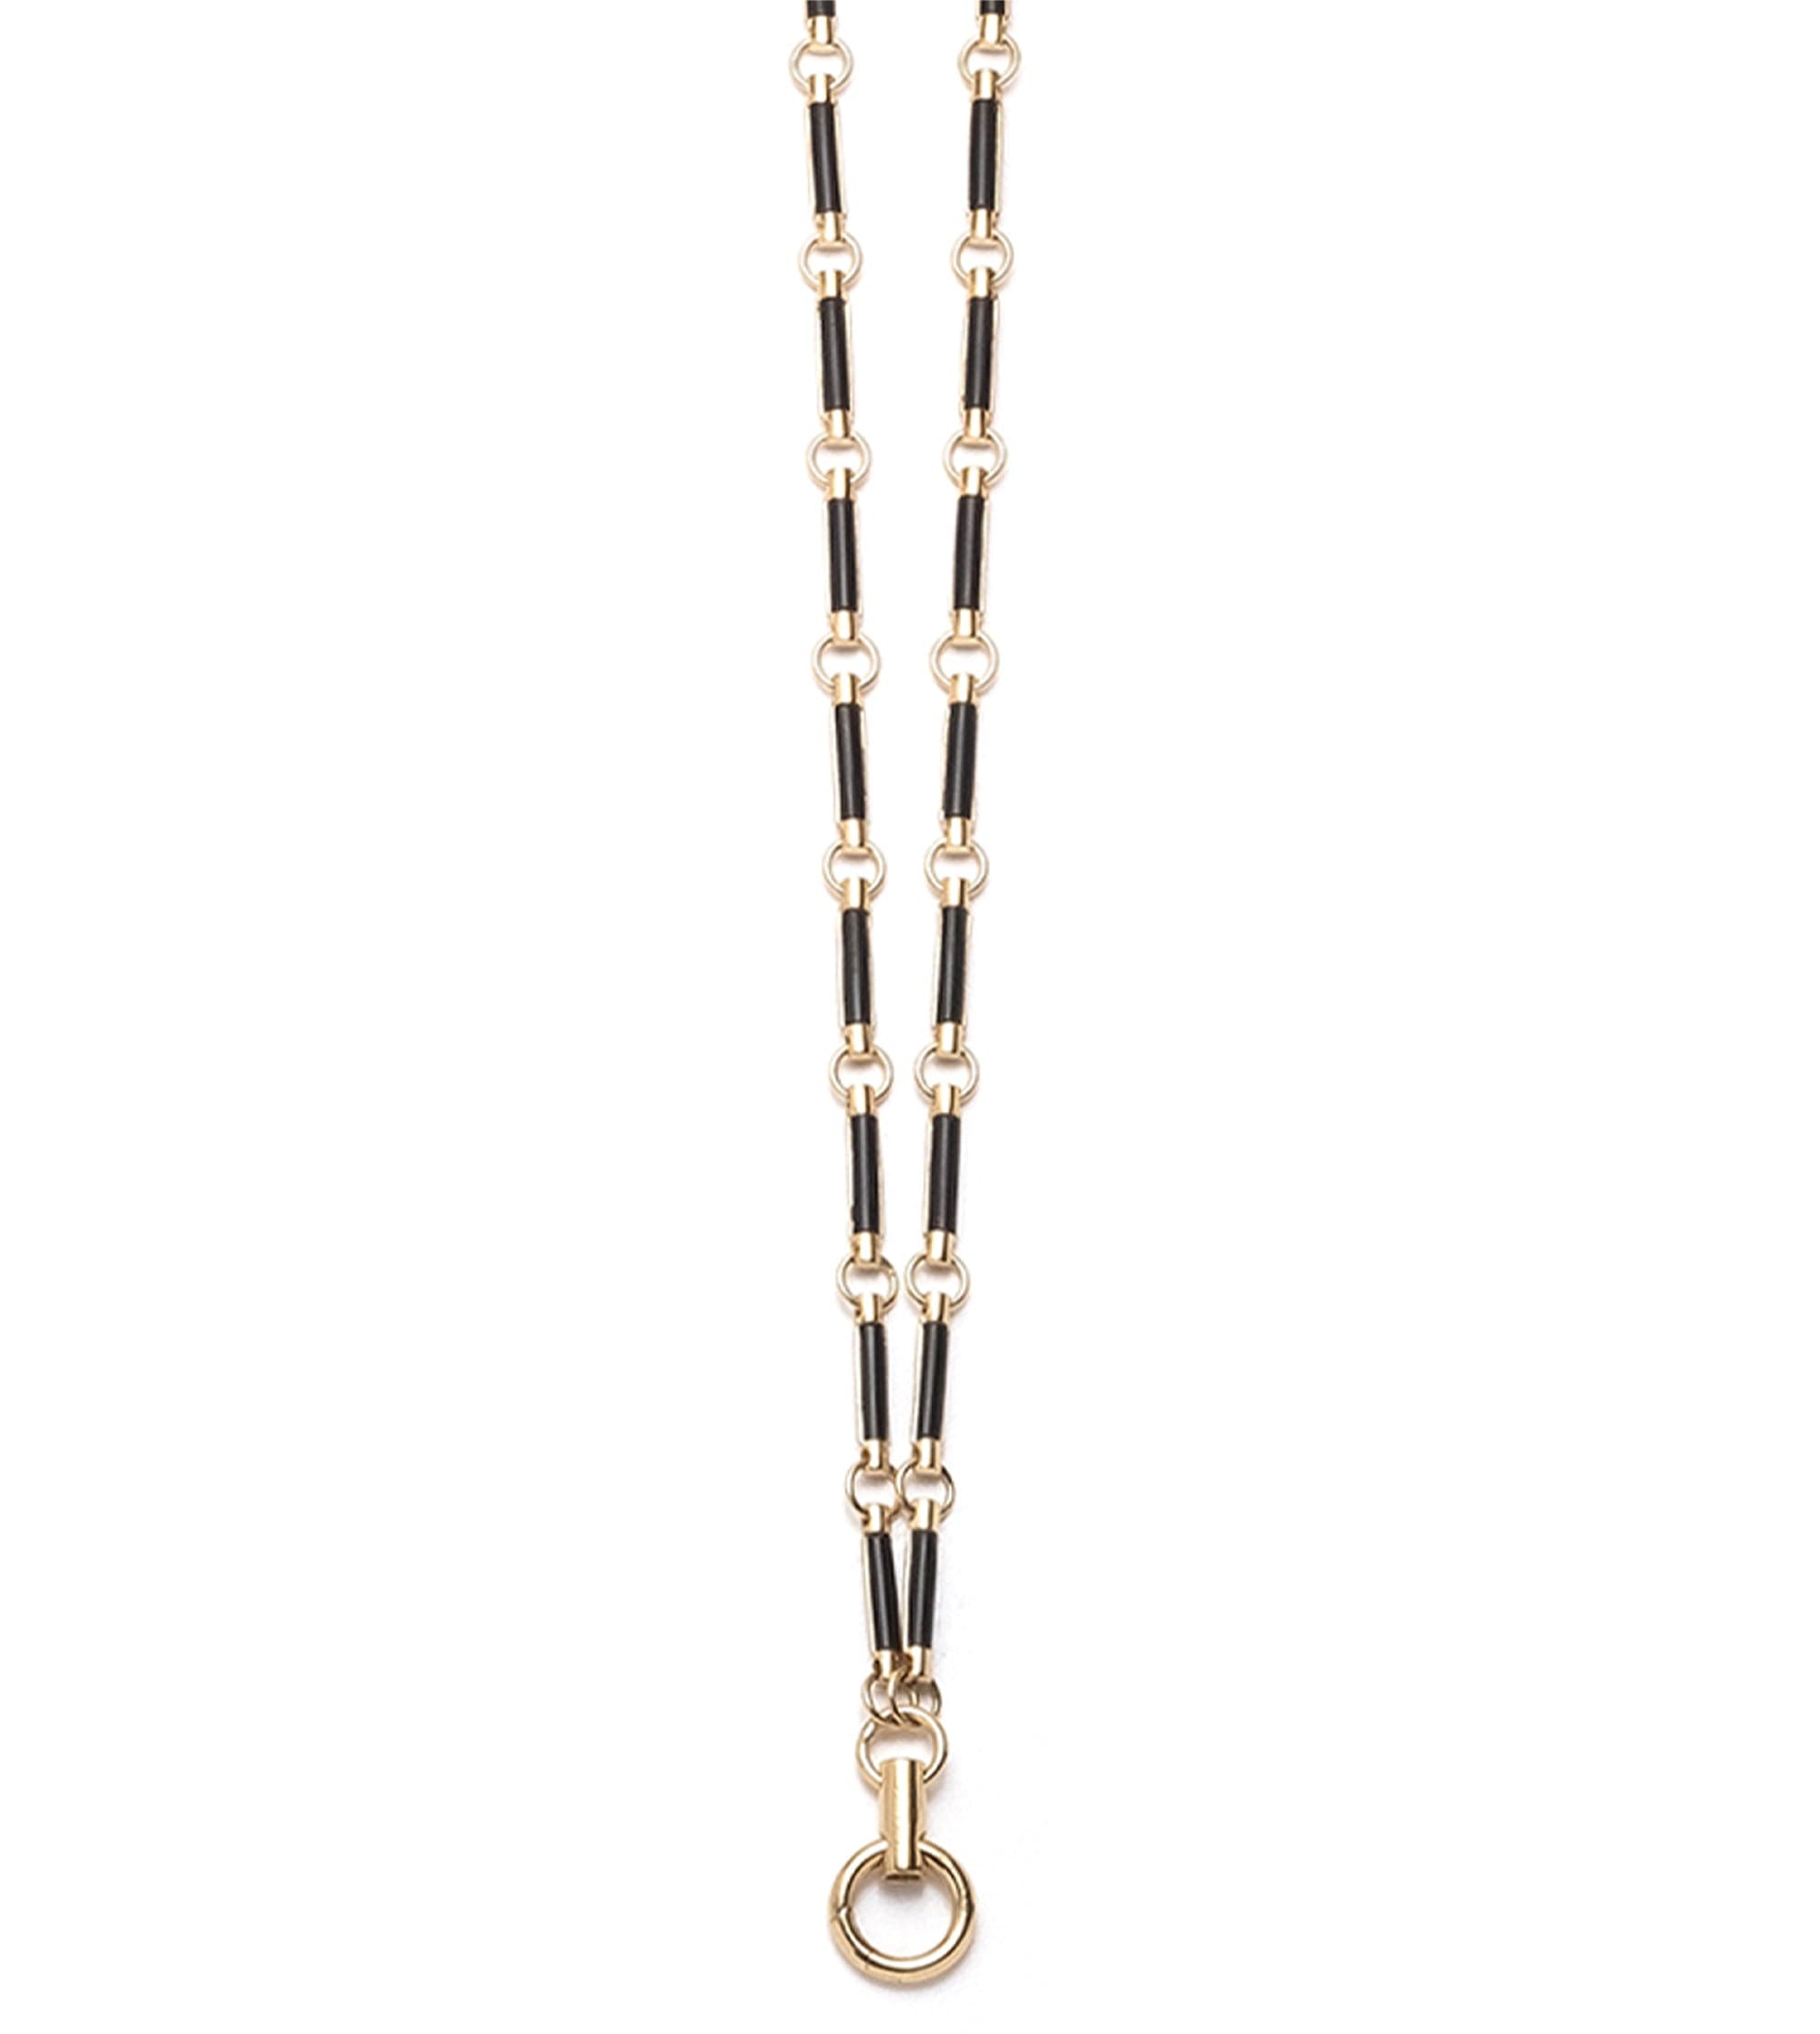 Onyx Stone Hanging Clockweight Chain